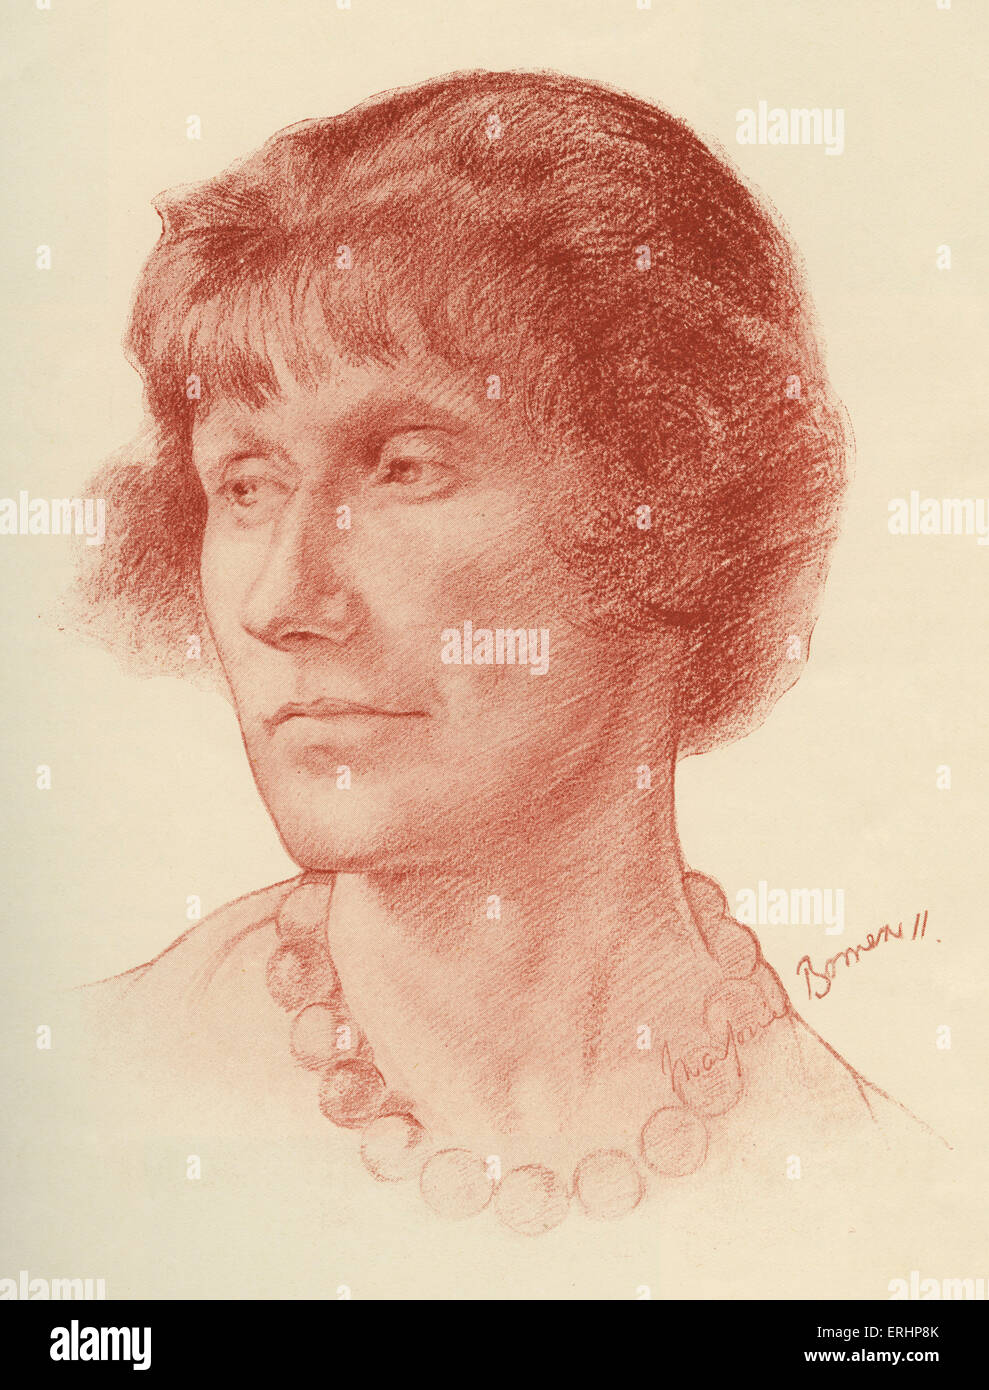 Marjorie Bowen - englischer Schriftsteller und Autor: 1. November 1885 - 23. Dezember 1952. Zeichnung von H M G Wilson, Bookman 1927 Stockfoto